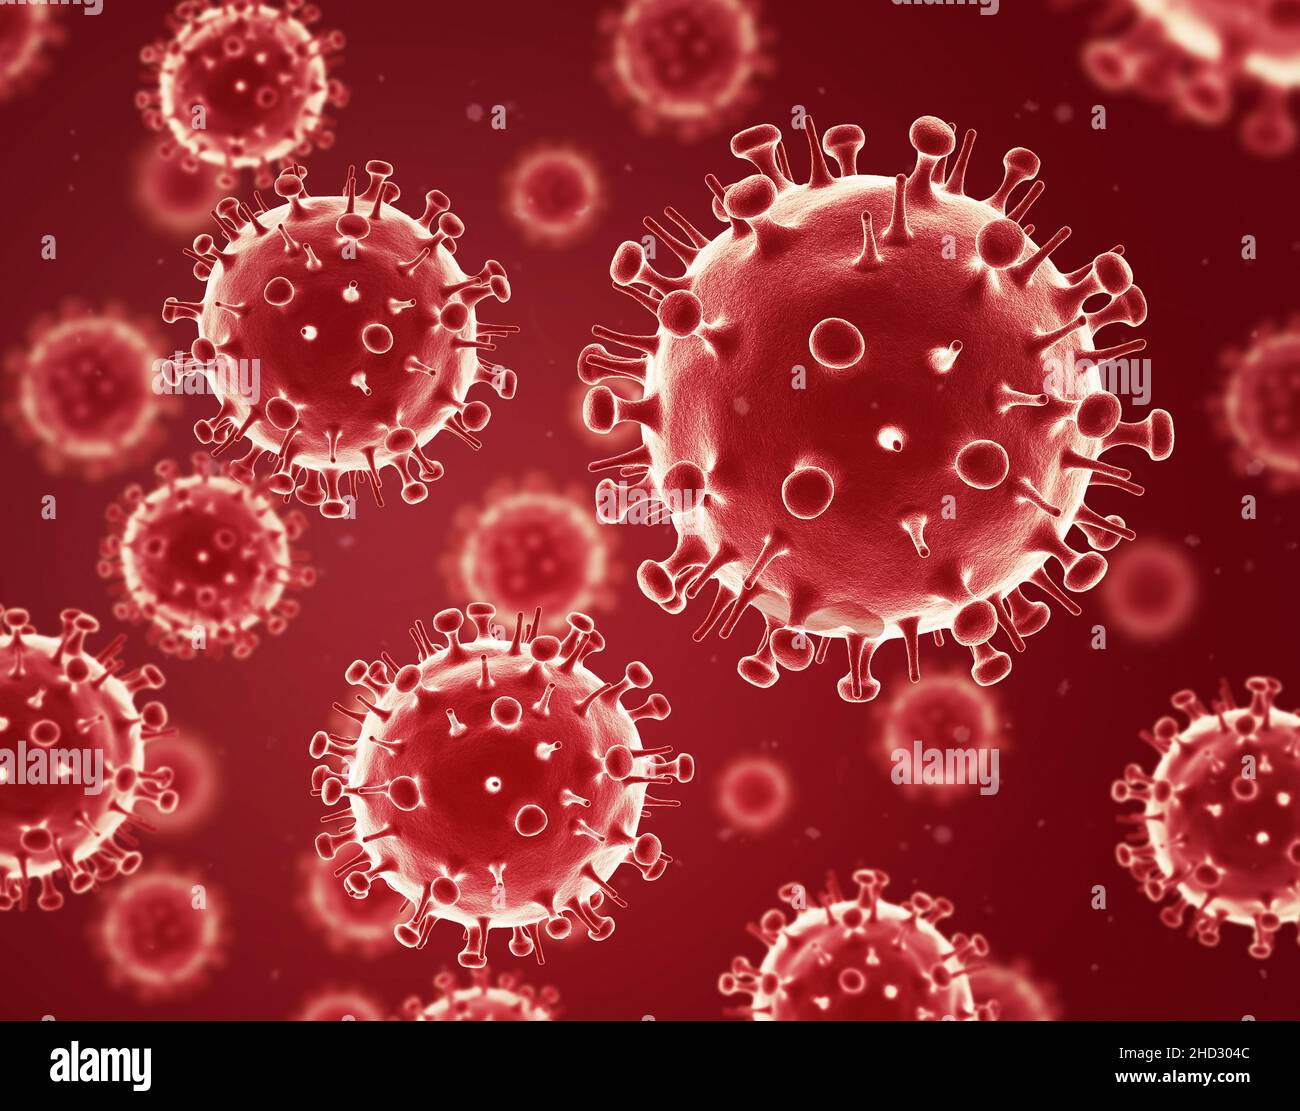 Virus dell'influenza. Sfondo rosso. 3d illustrazione. Virus influenzale. Foto Stock